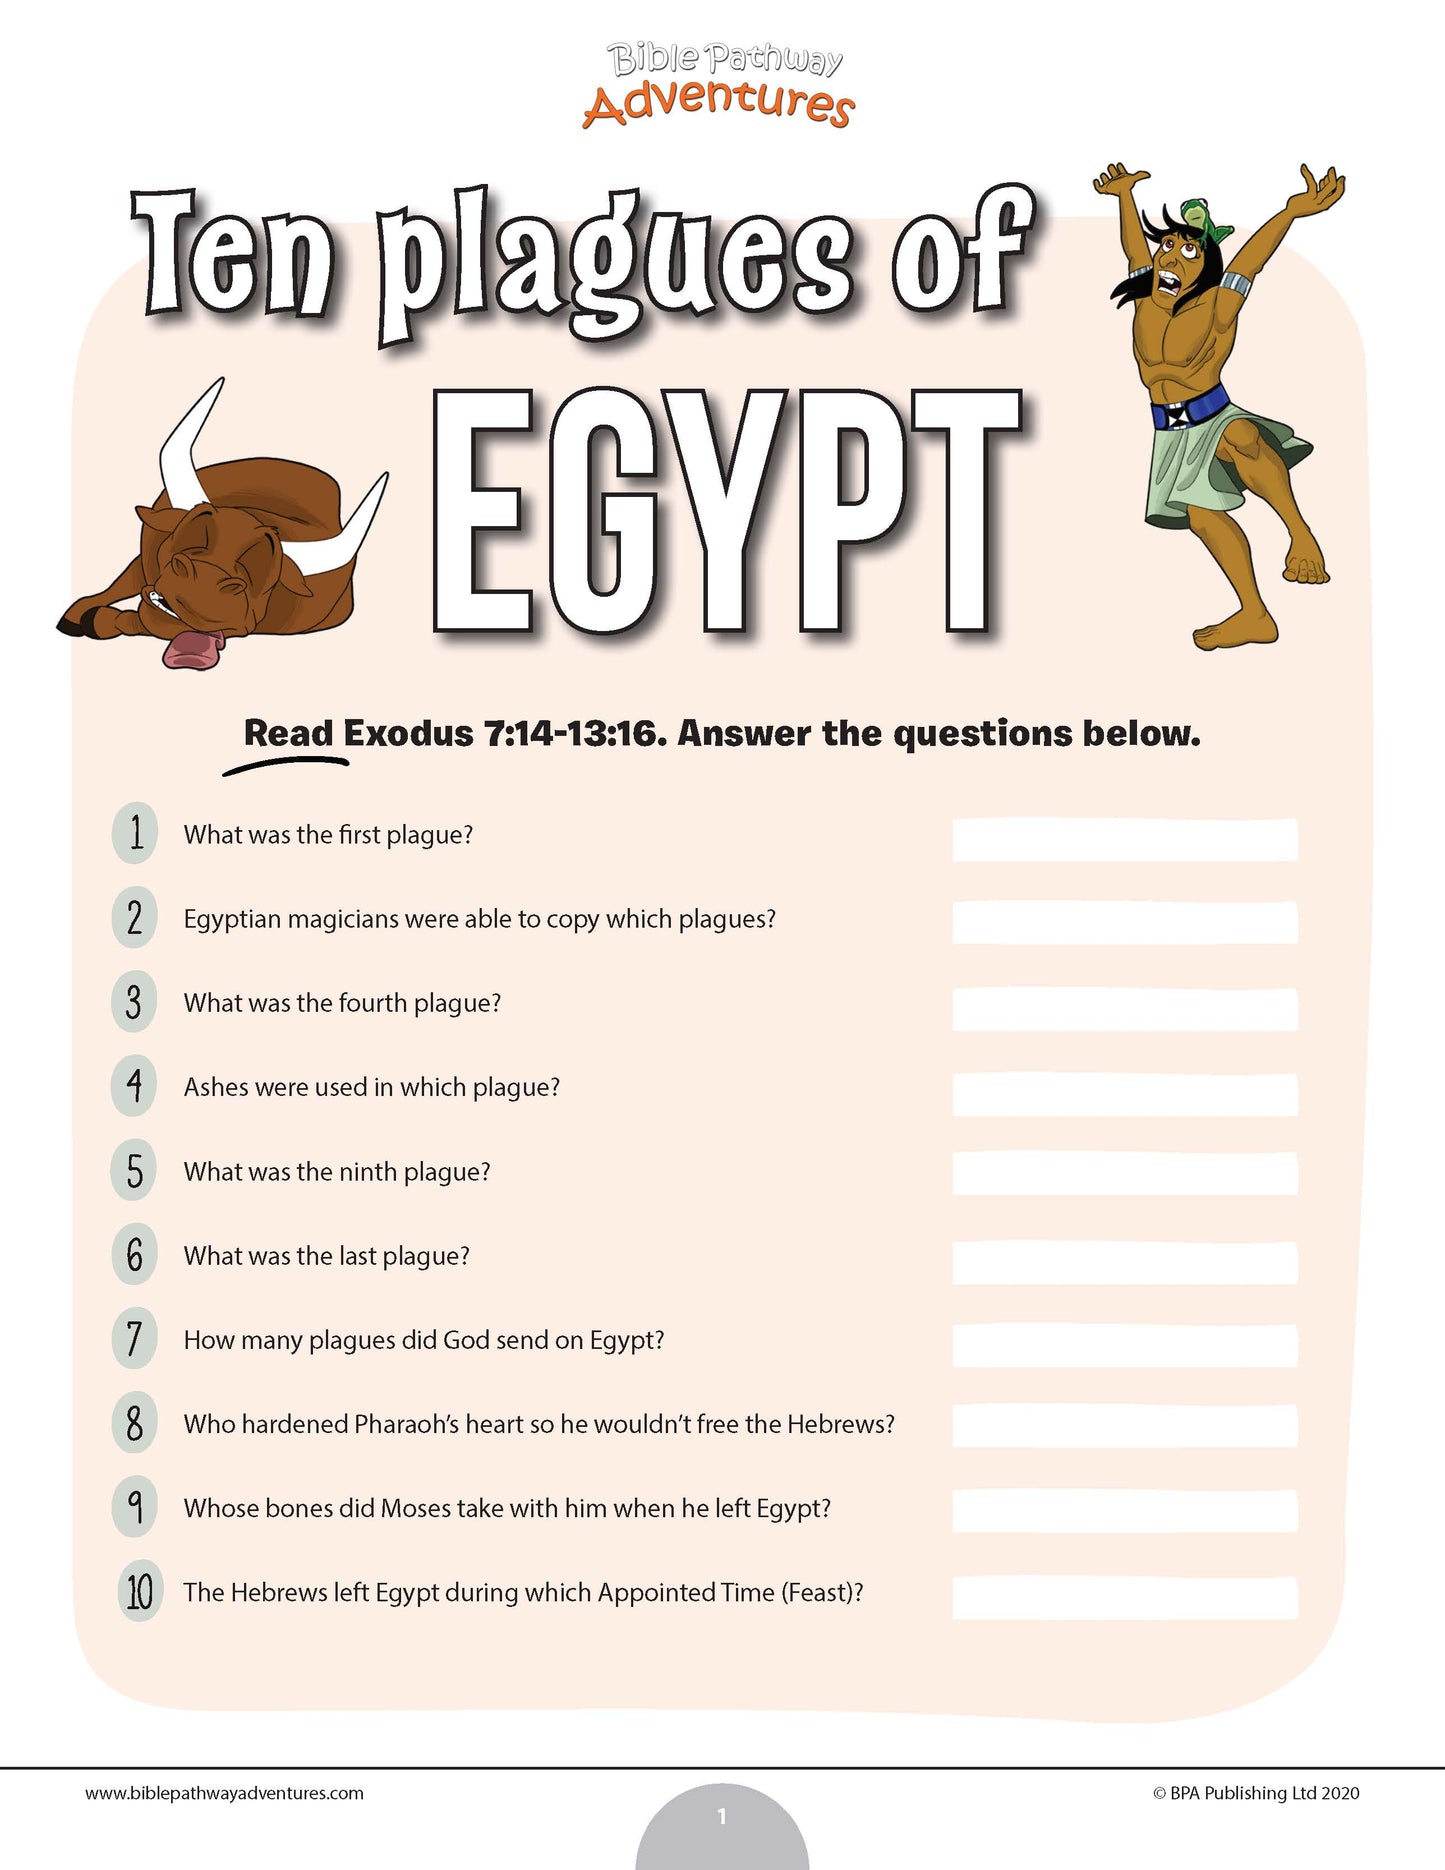 Prueba de las diez plagas de Egipto